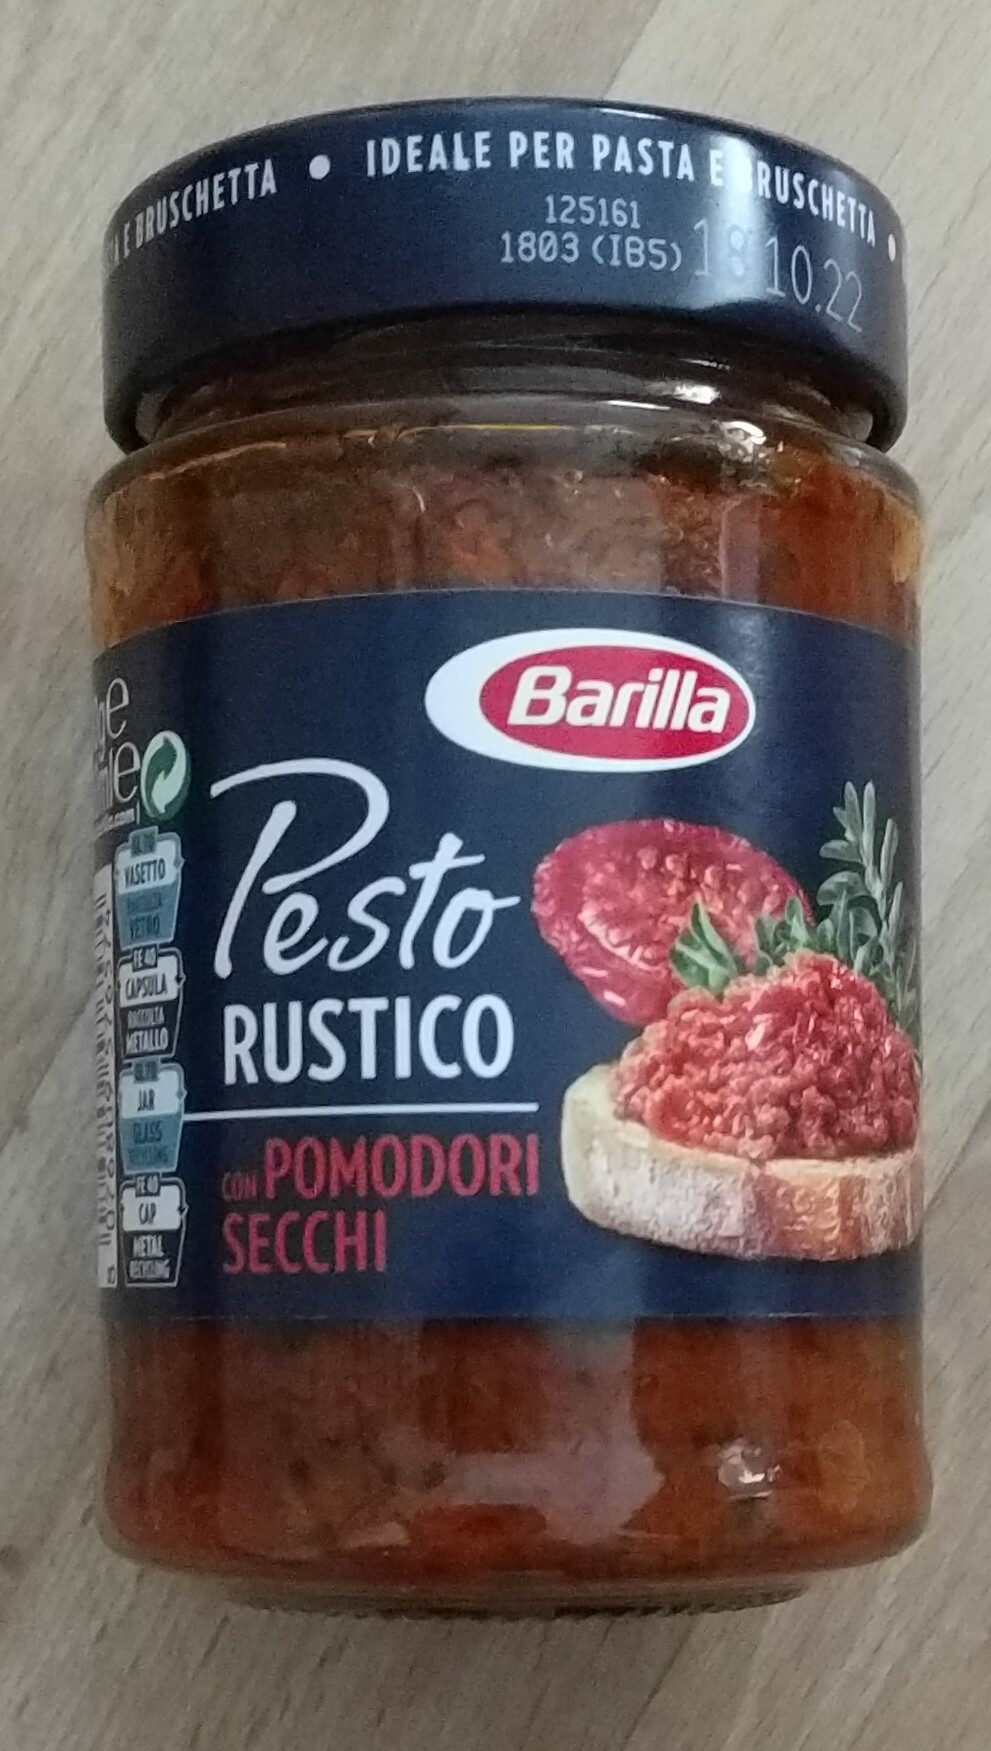 Pesto Rustico - Pomodori Secchi - Istruzioni per il riciclaggio e/o informazioni sull'imballaggio